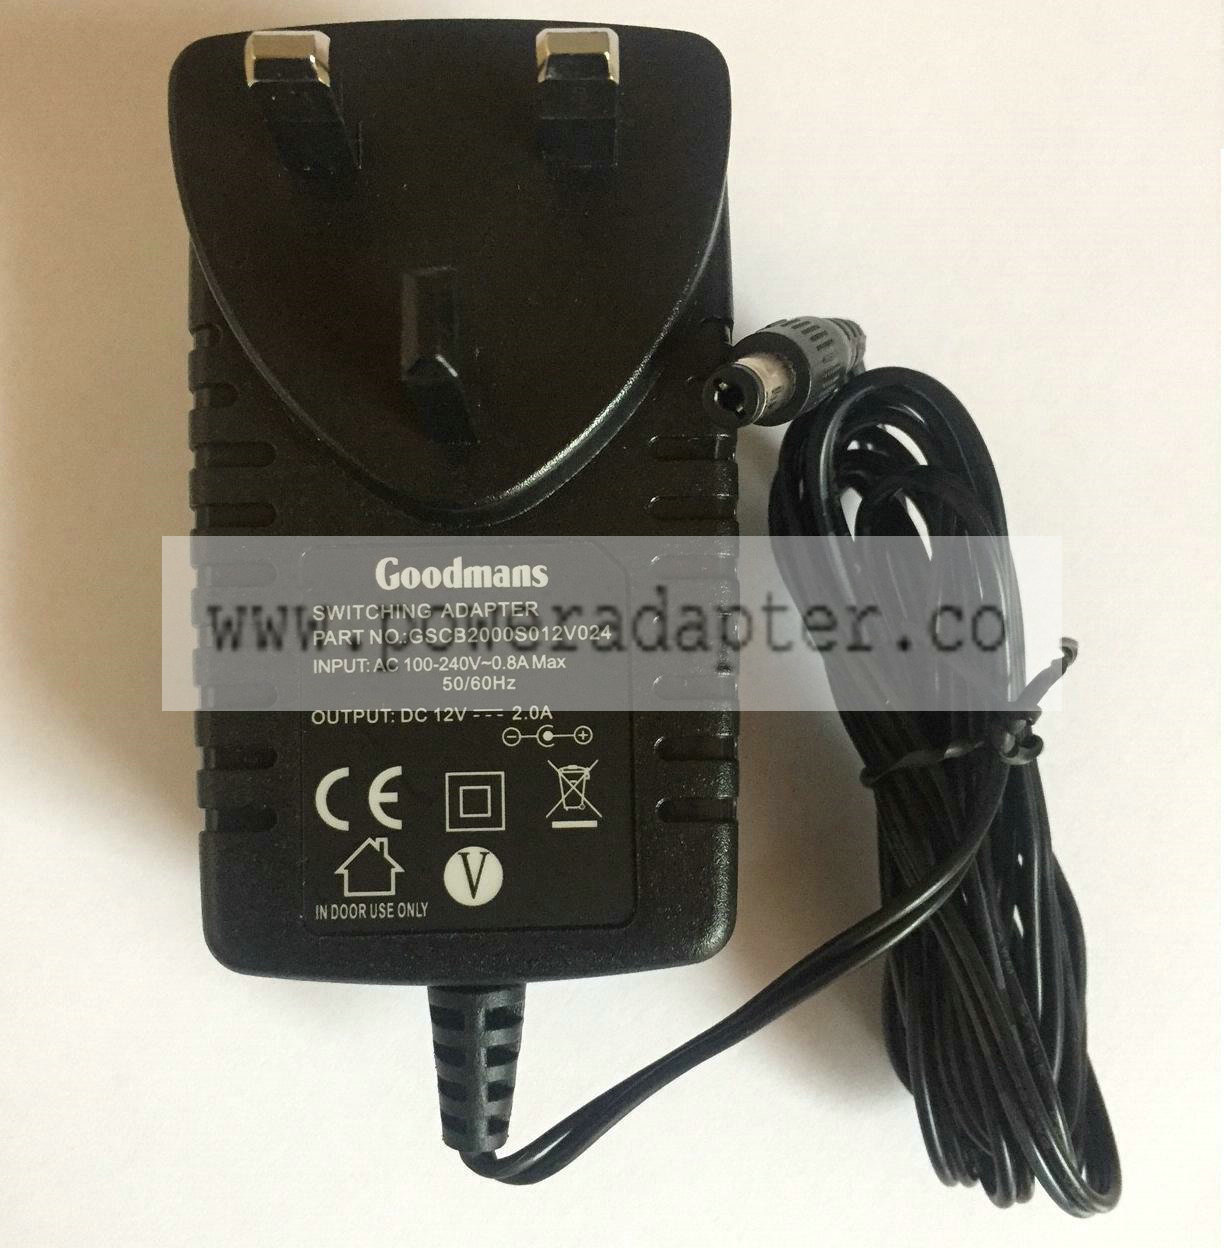 GOODMANS GV101YRH32 GV101YRH50 Genuine 12V 2A Mains Switching Power Adapter Plug Output Voltage: 12V, 2.0A Brand: Go - Click Image to Close